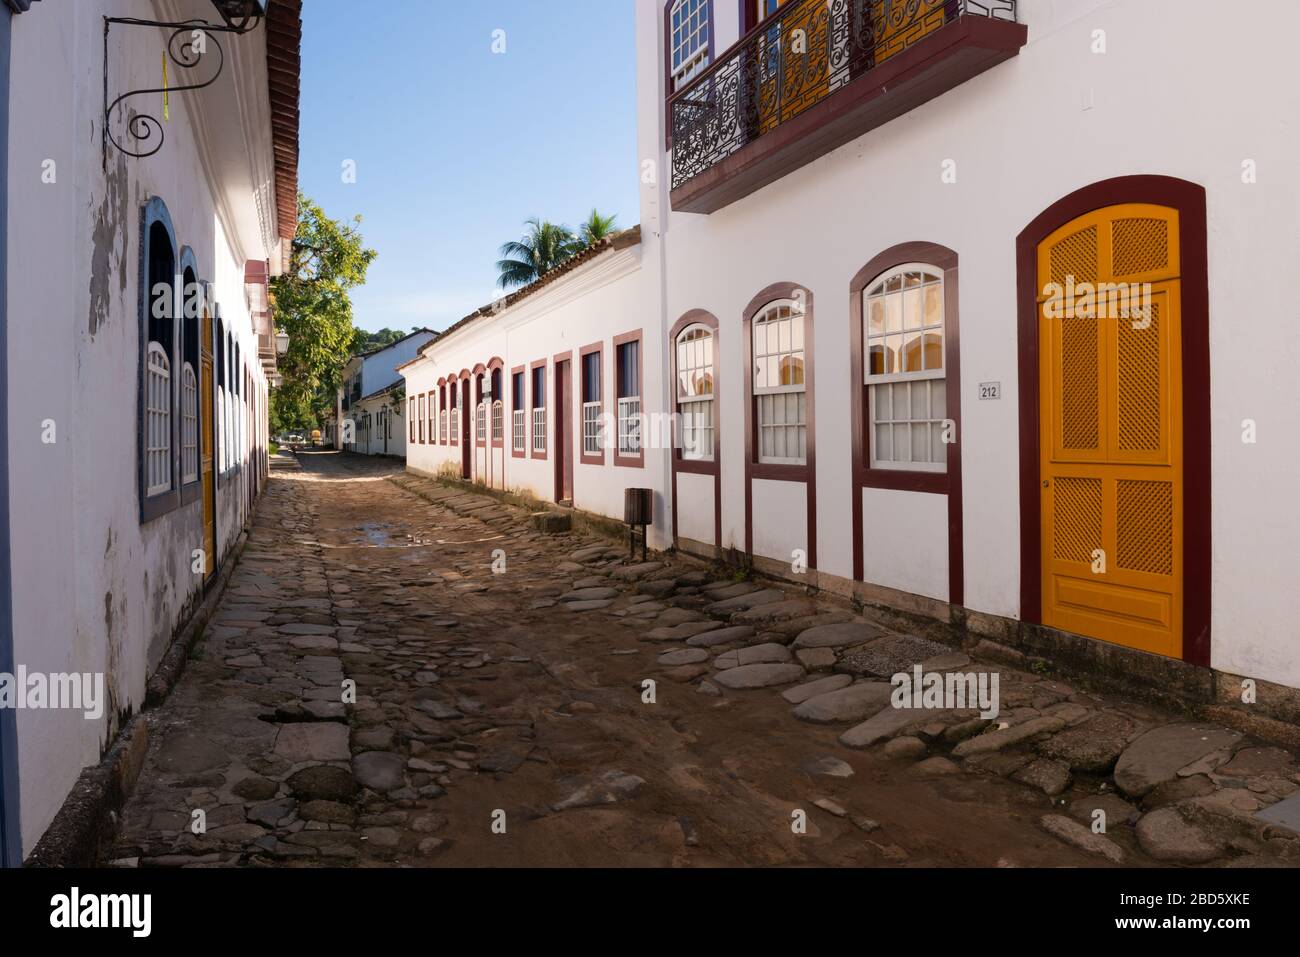 Street in Paraty hystoric center, Rio de Janeiro, Brazil Stock Photo